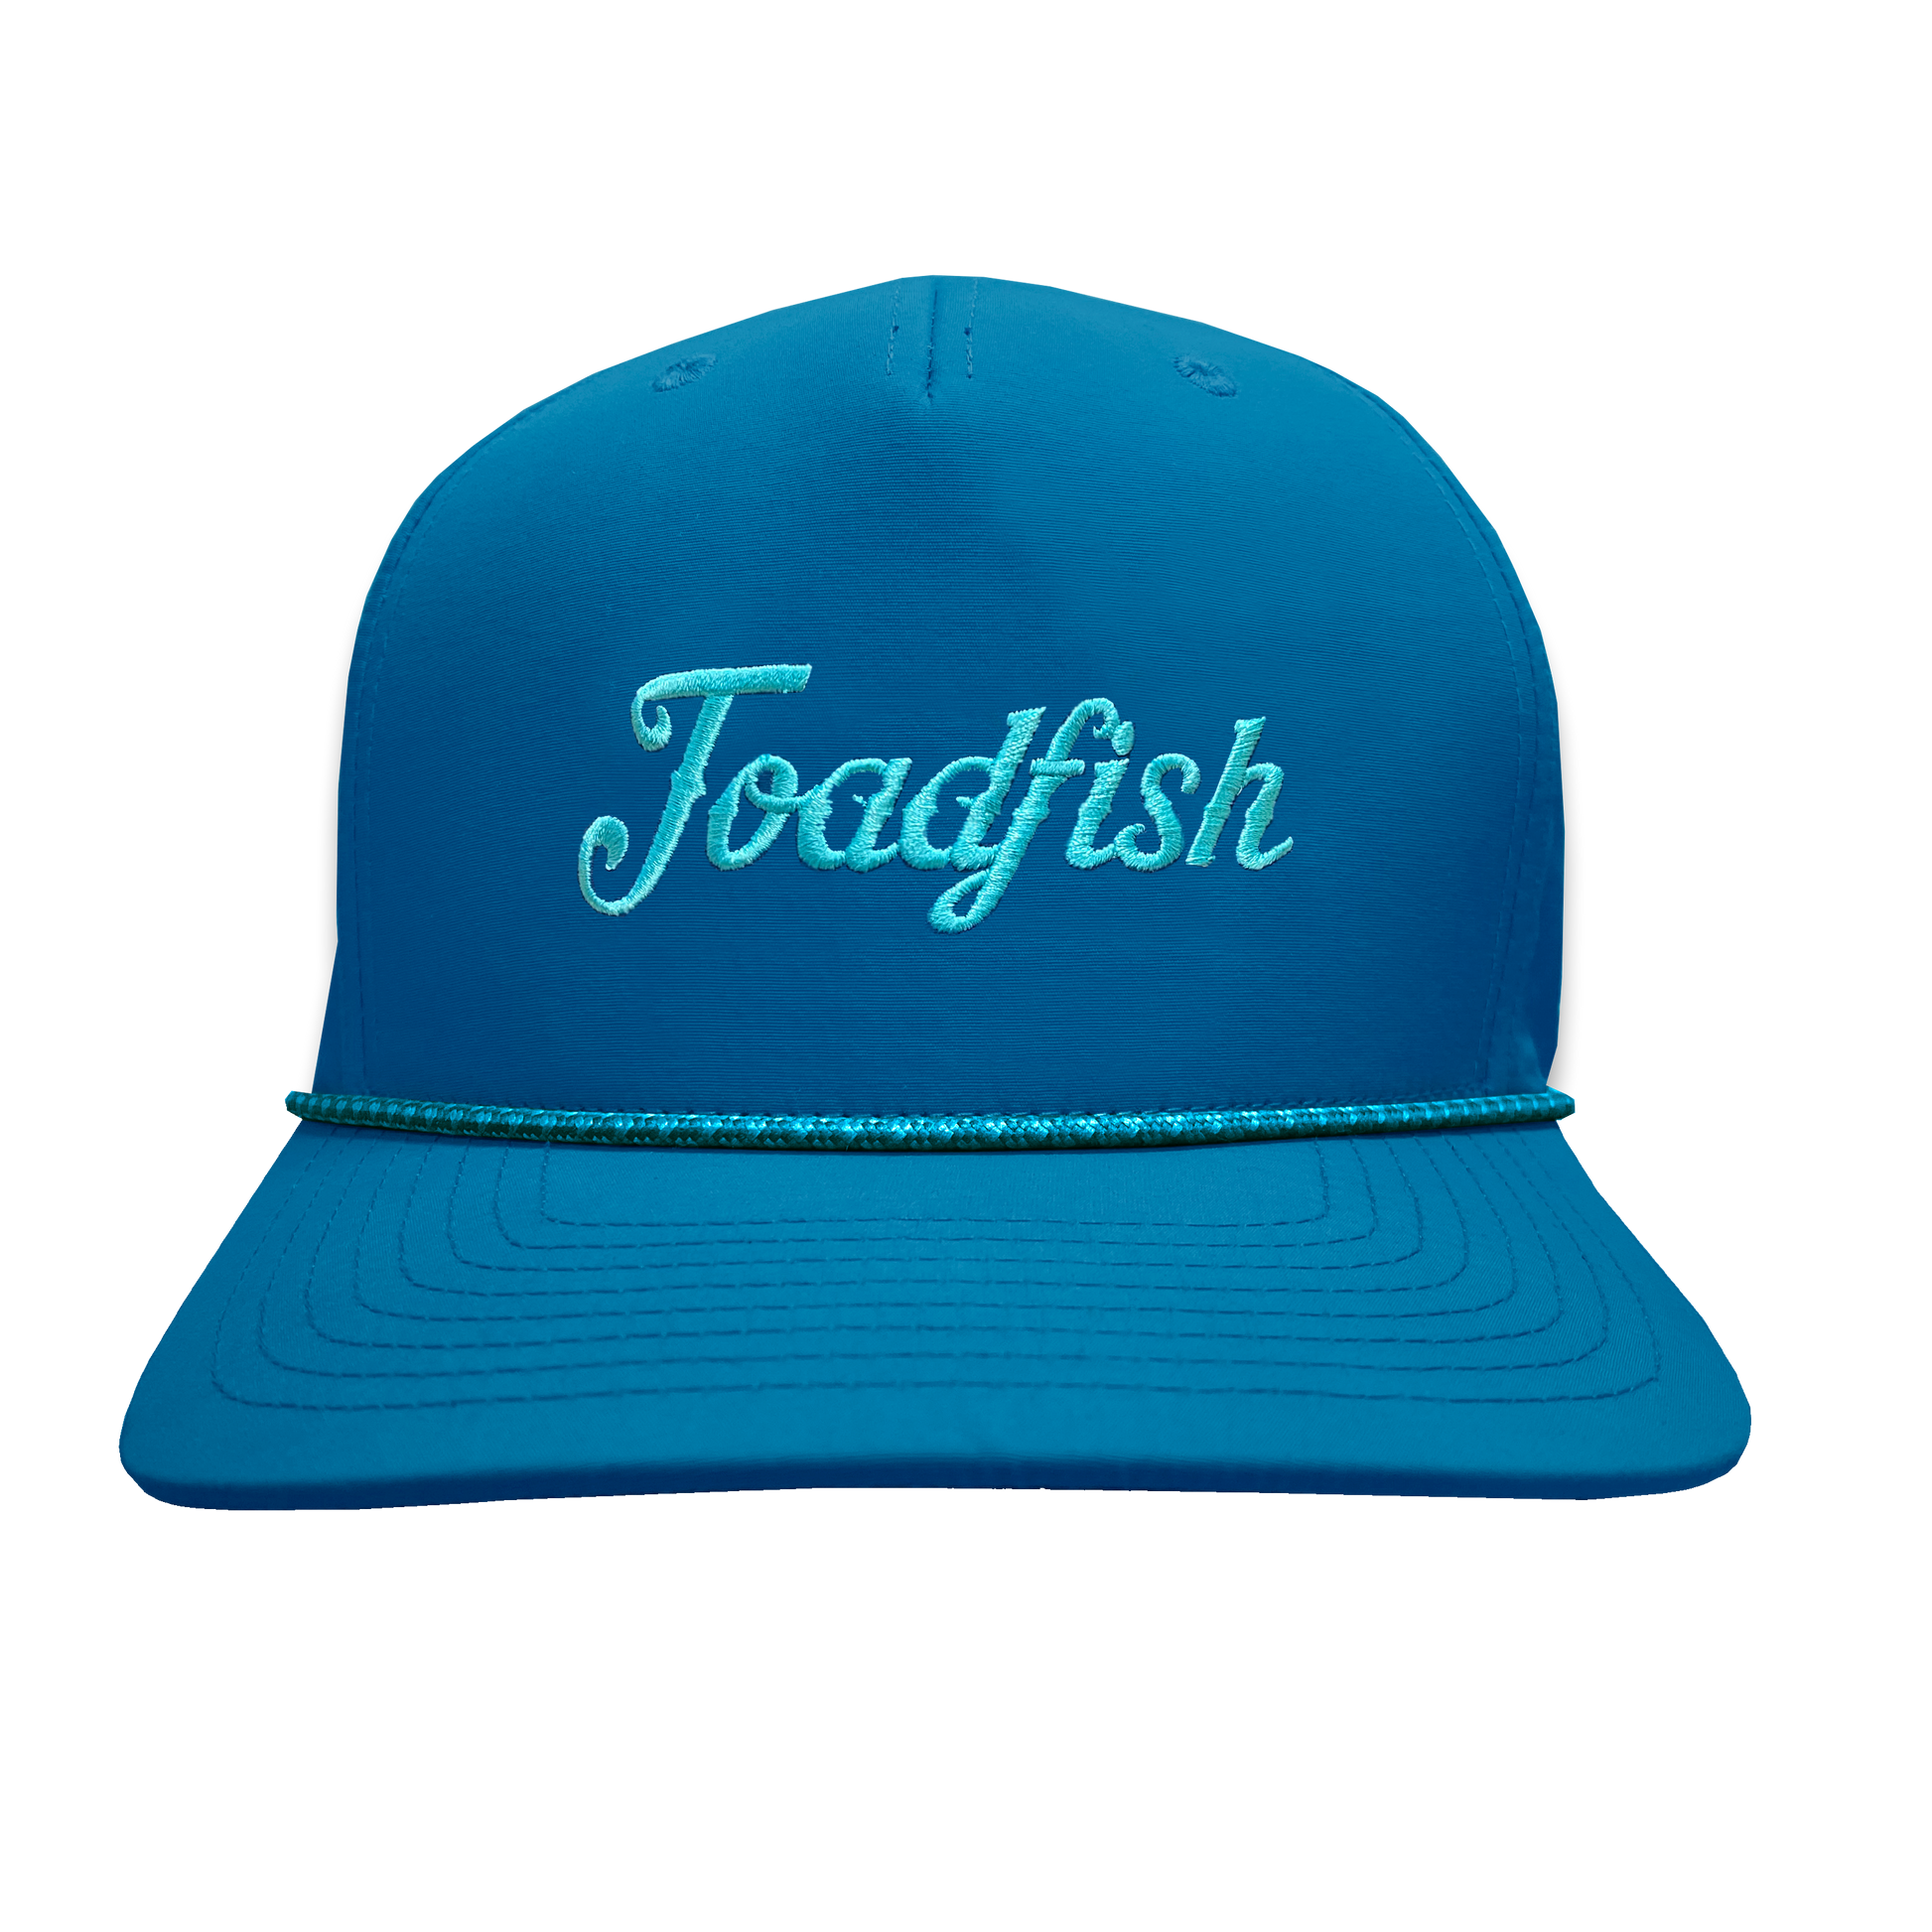 The Bluebill Hats Toadfish 